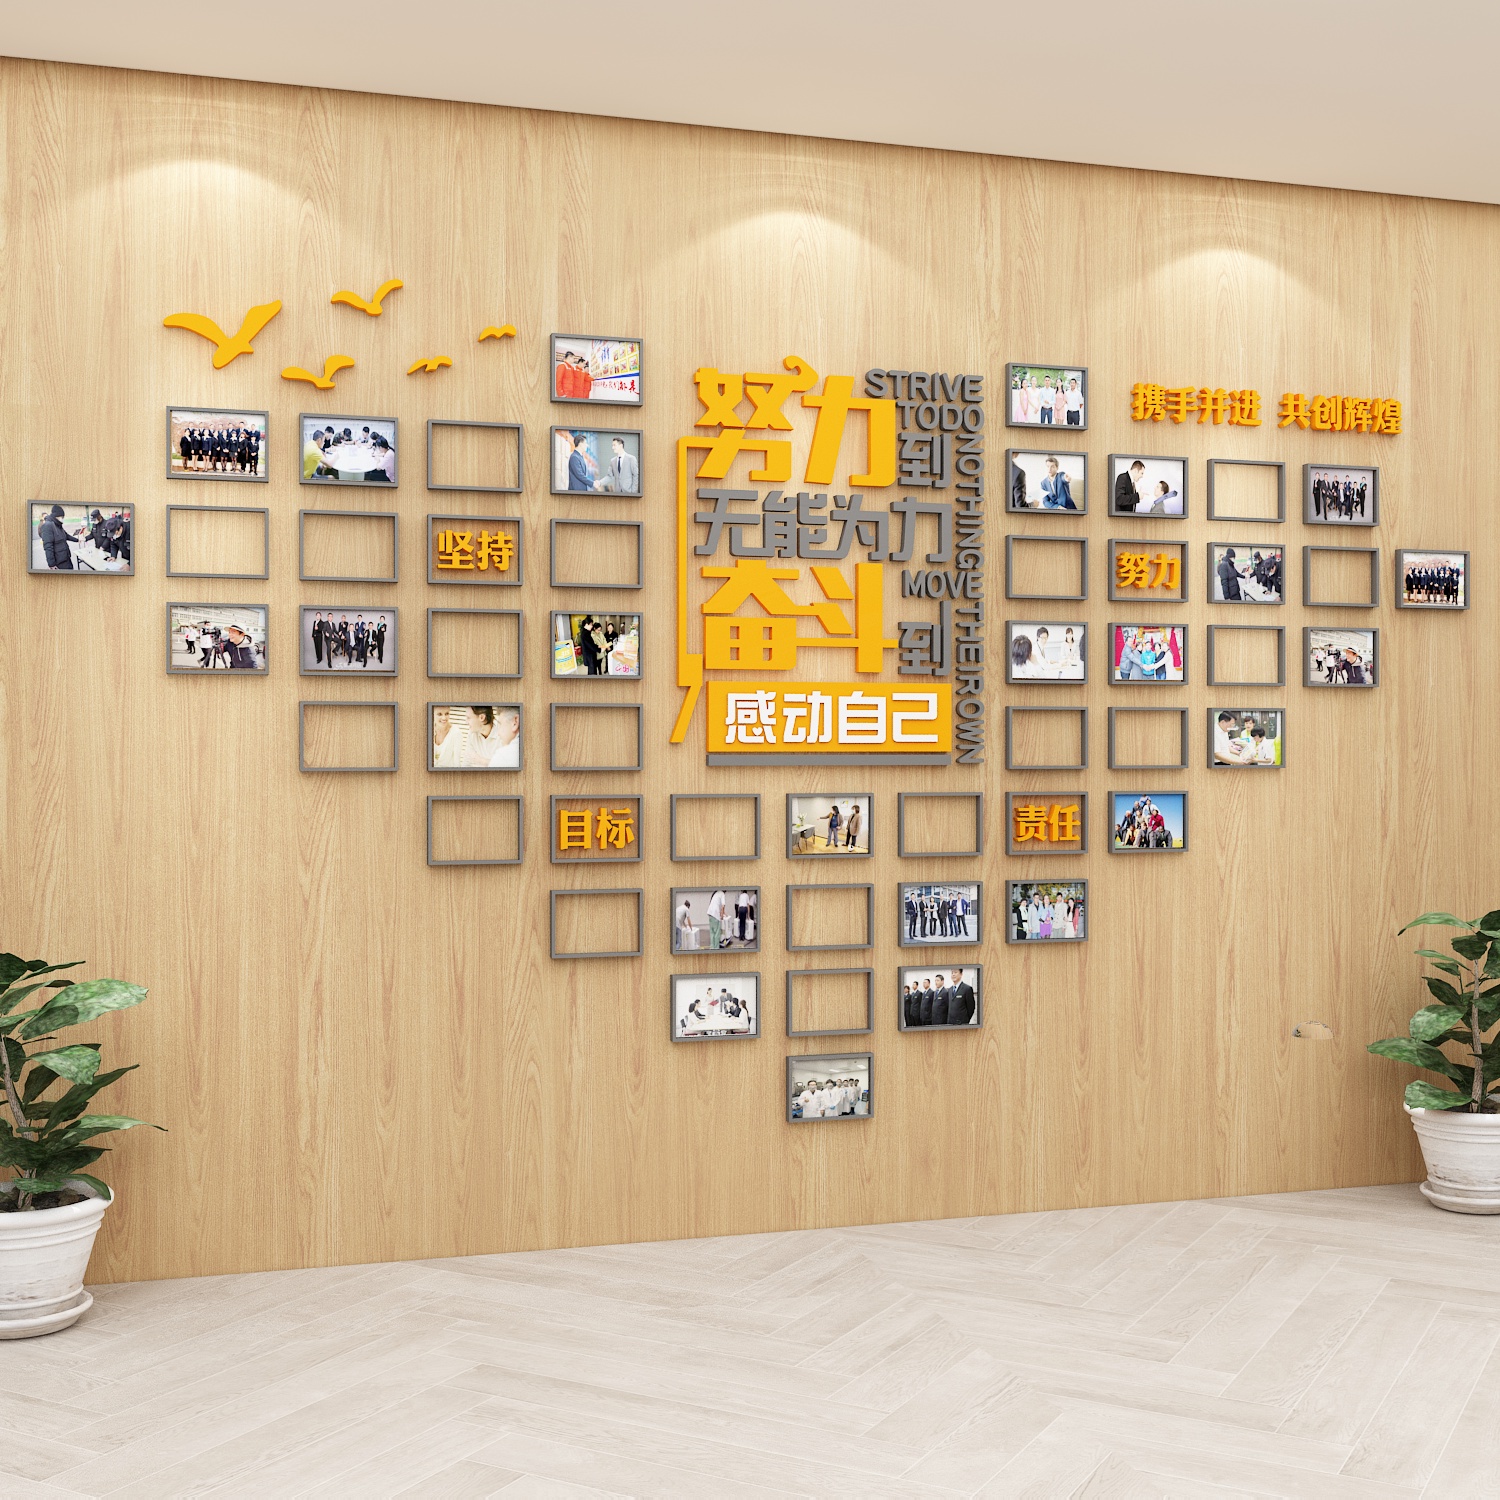 奋斗照片墙企业文化贴纸团队员工风采荣誉展示公司会议办公室装饰